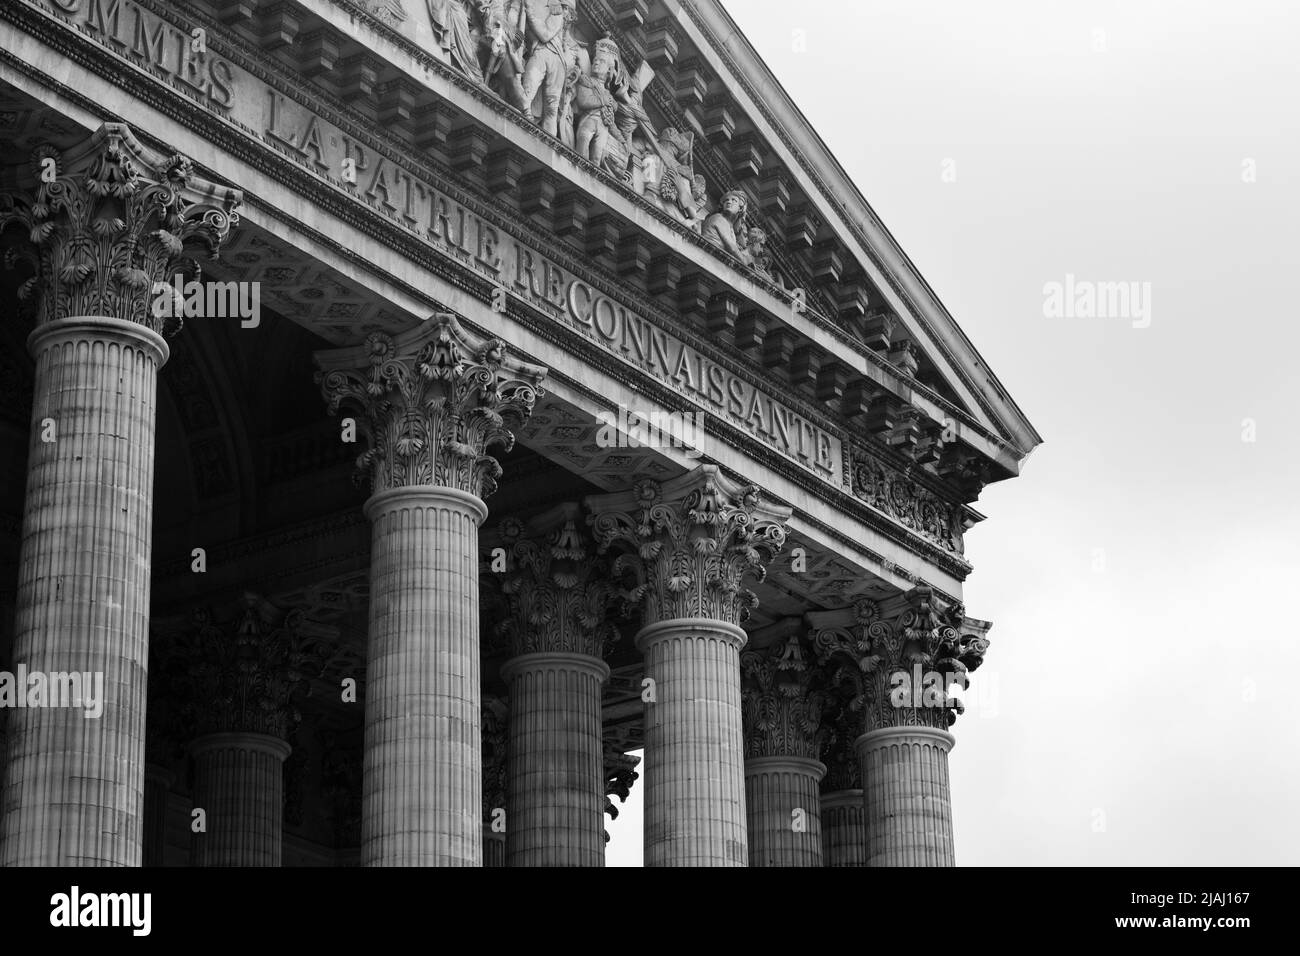 Image en noir et blanc du fronton du Panthéon à Paris, France. Montrant juste le coin supérieur du toit et quelques colonnes. Banque D'Images